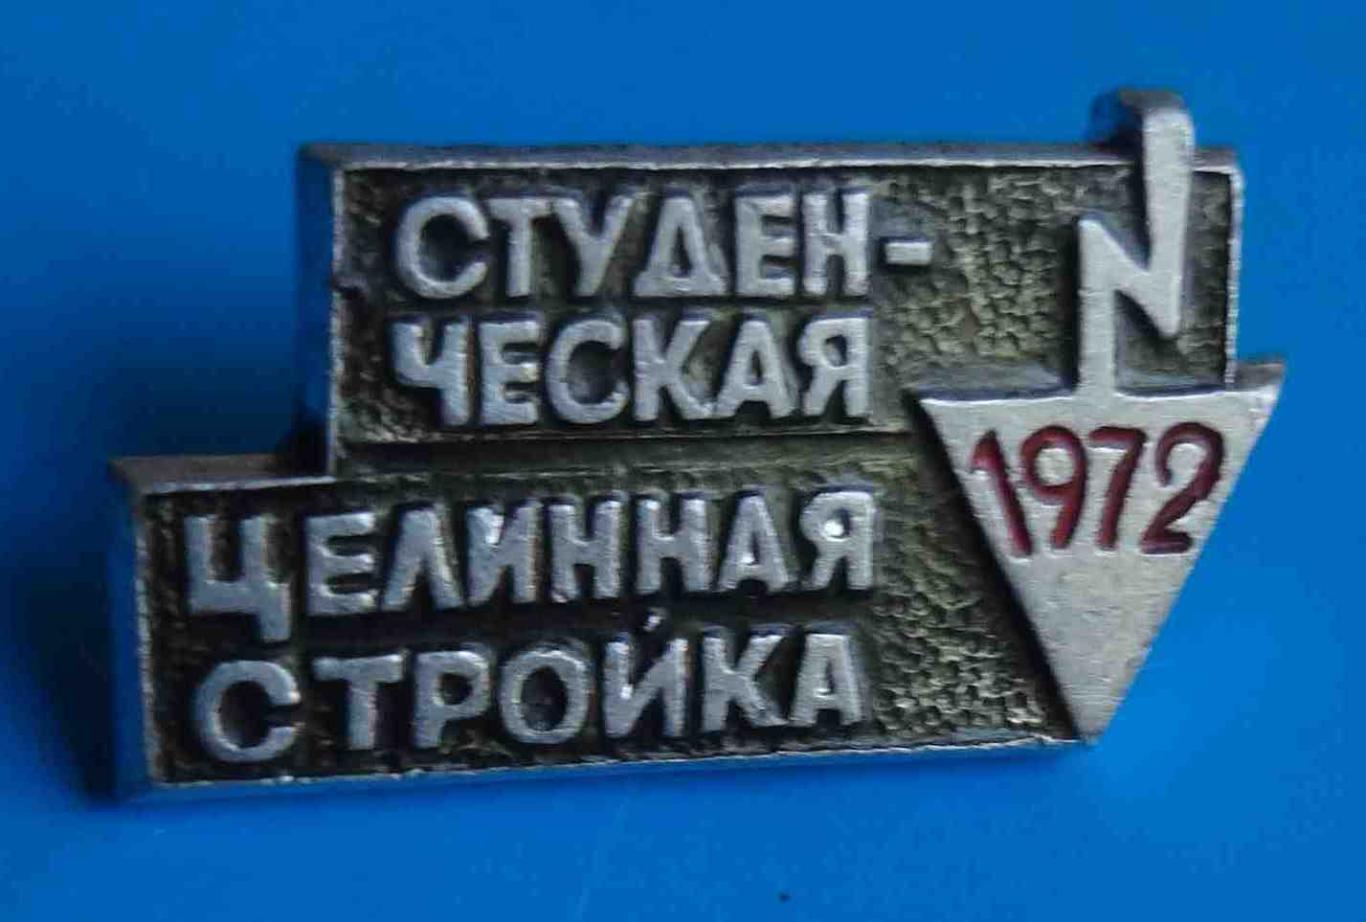 Студенческая целинная стройка 1972 ССО ВЛКСМ 2